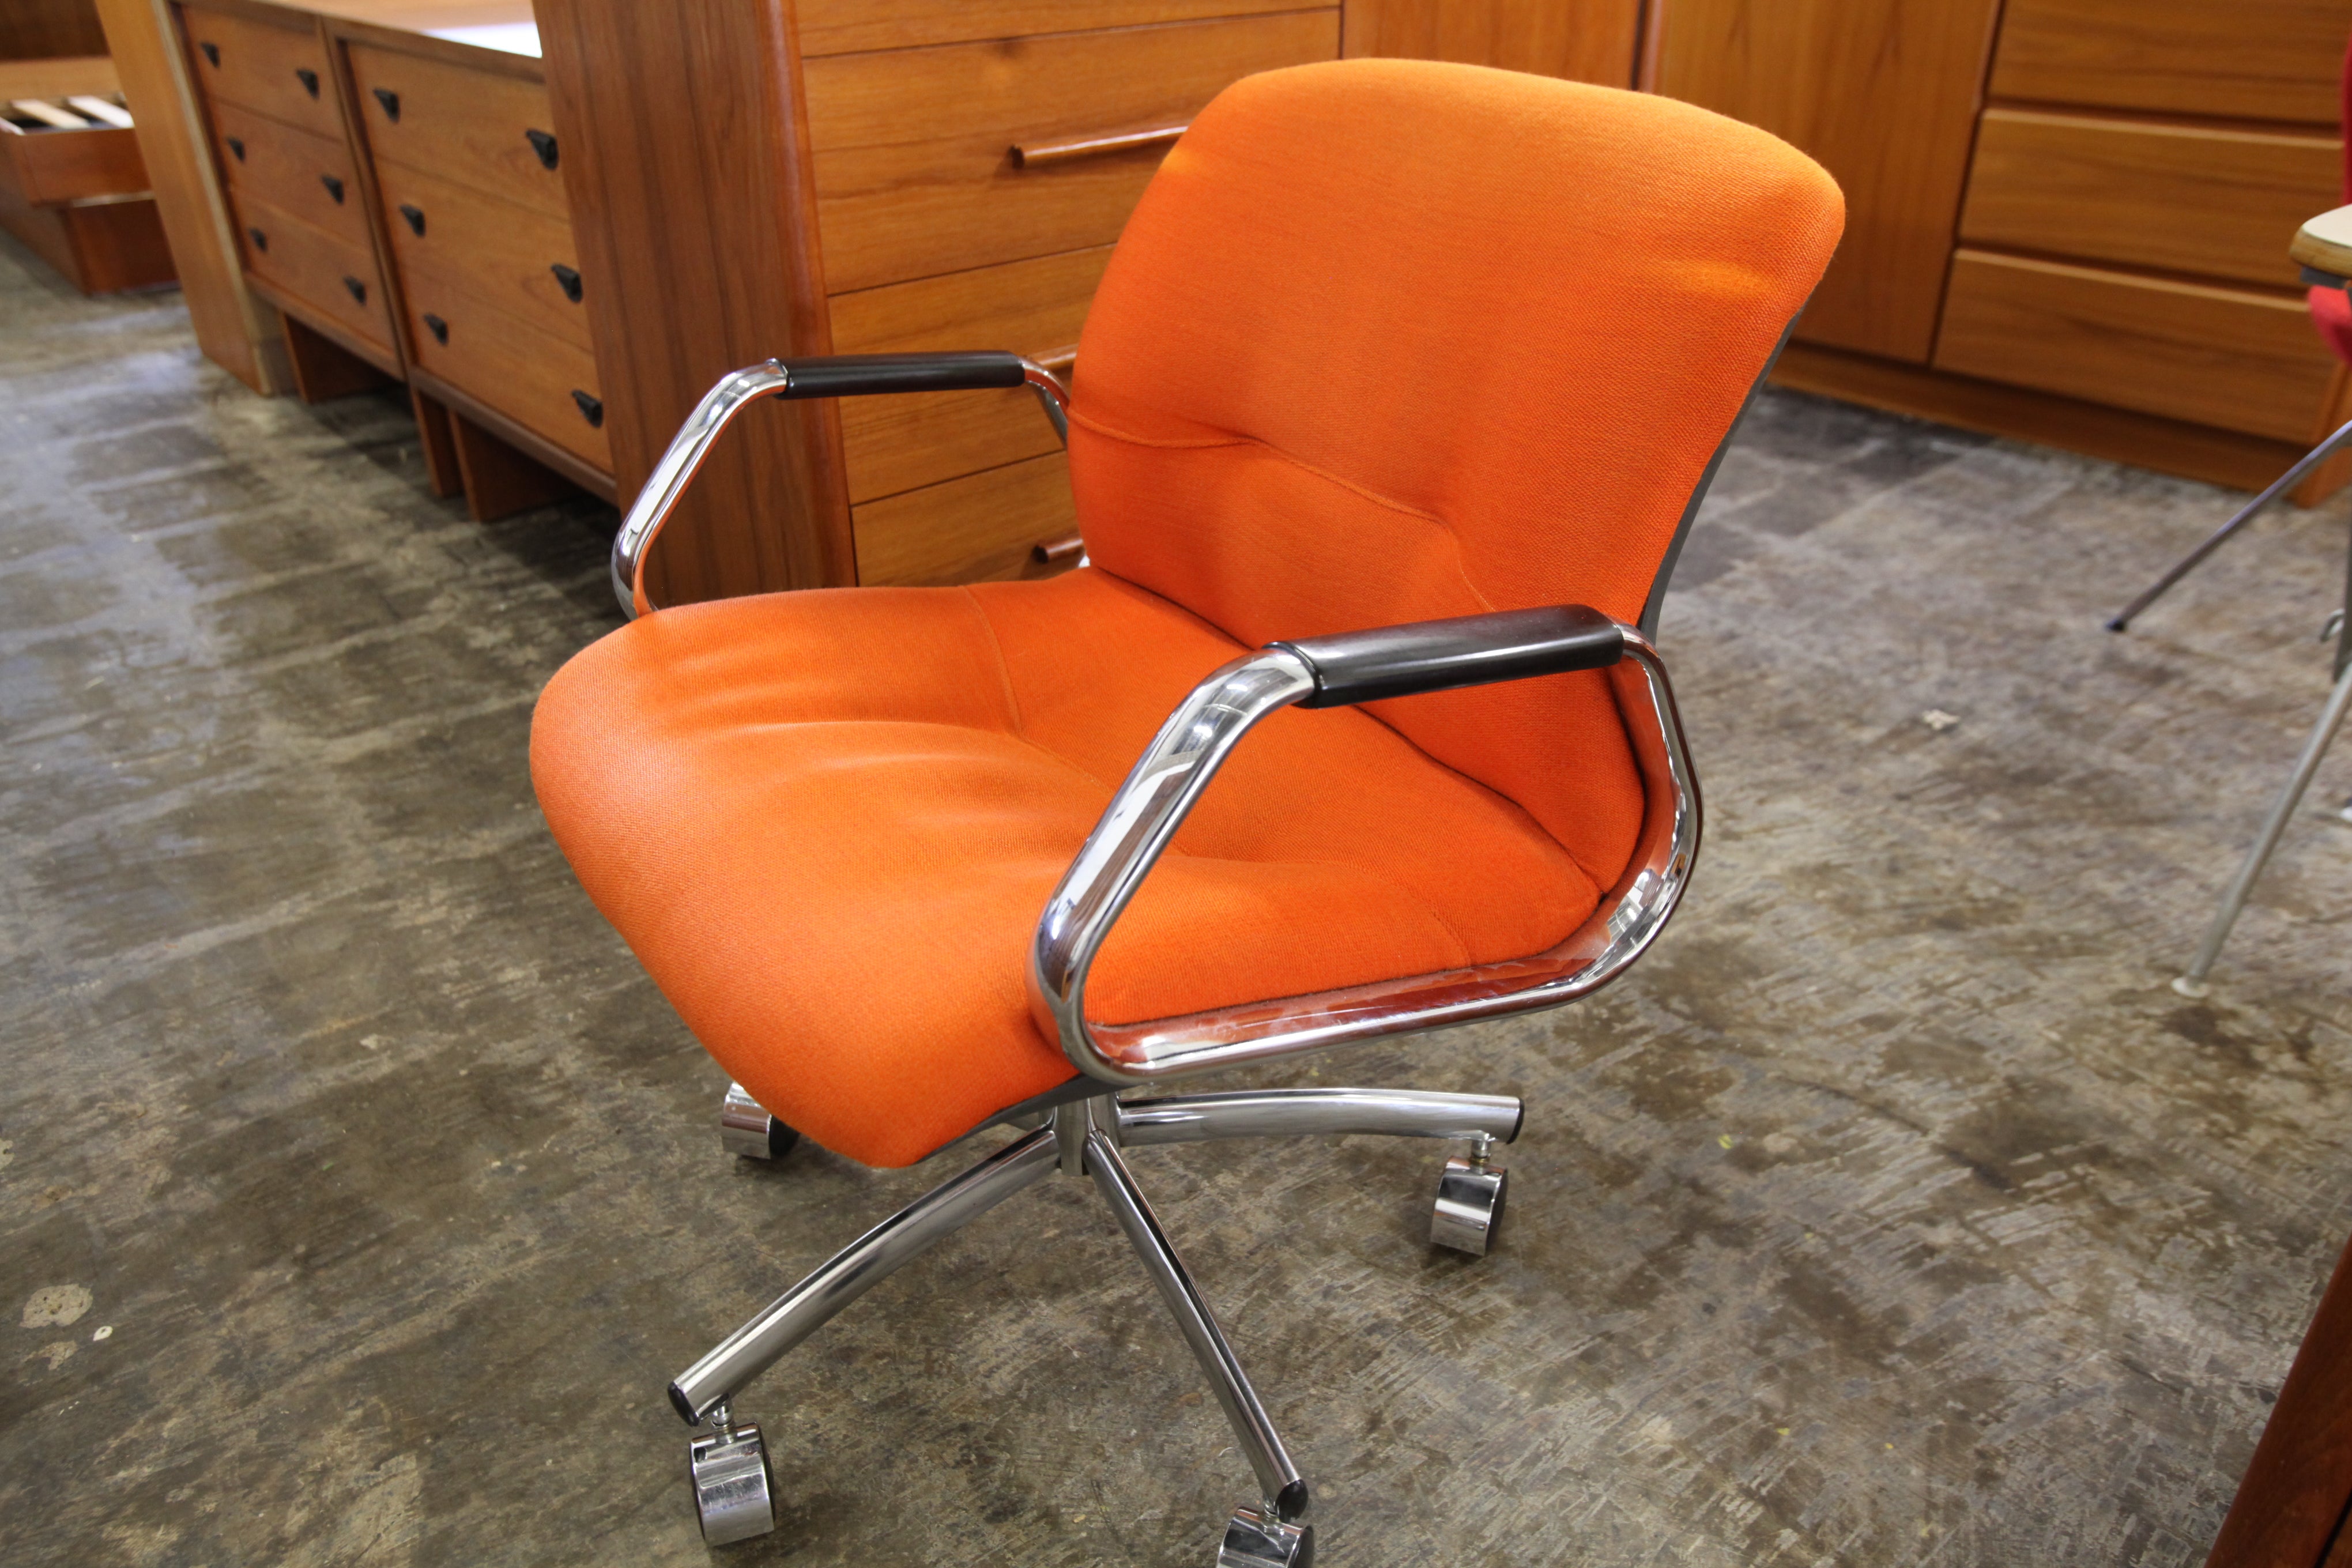 Vintage Orange Steelcase Chair (24.5"W x 30.5"H x 26"D)